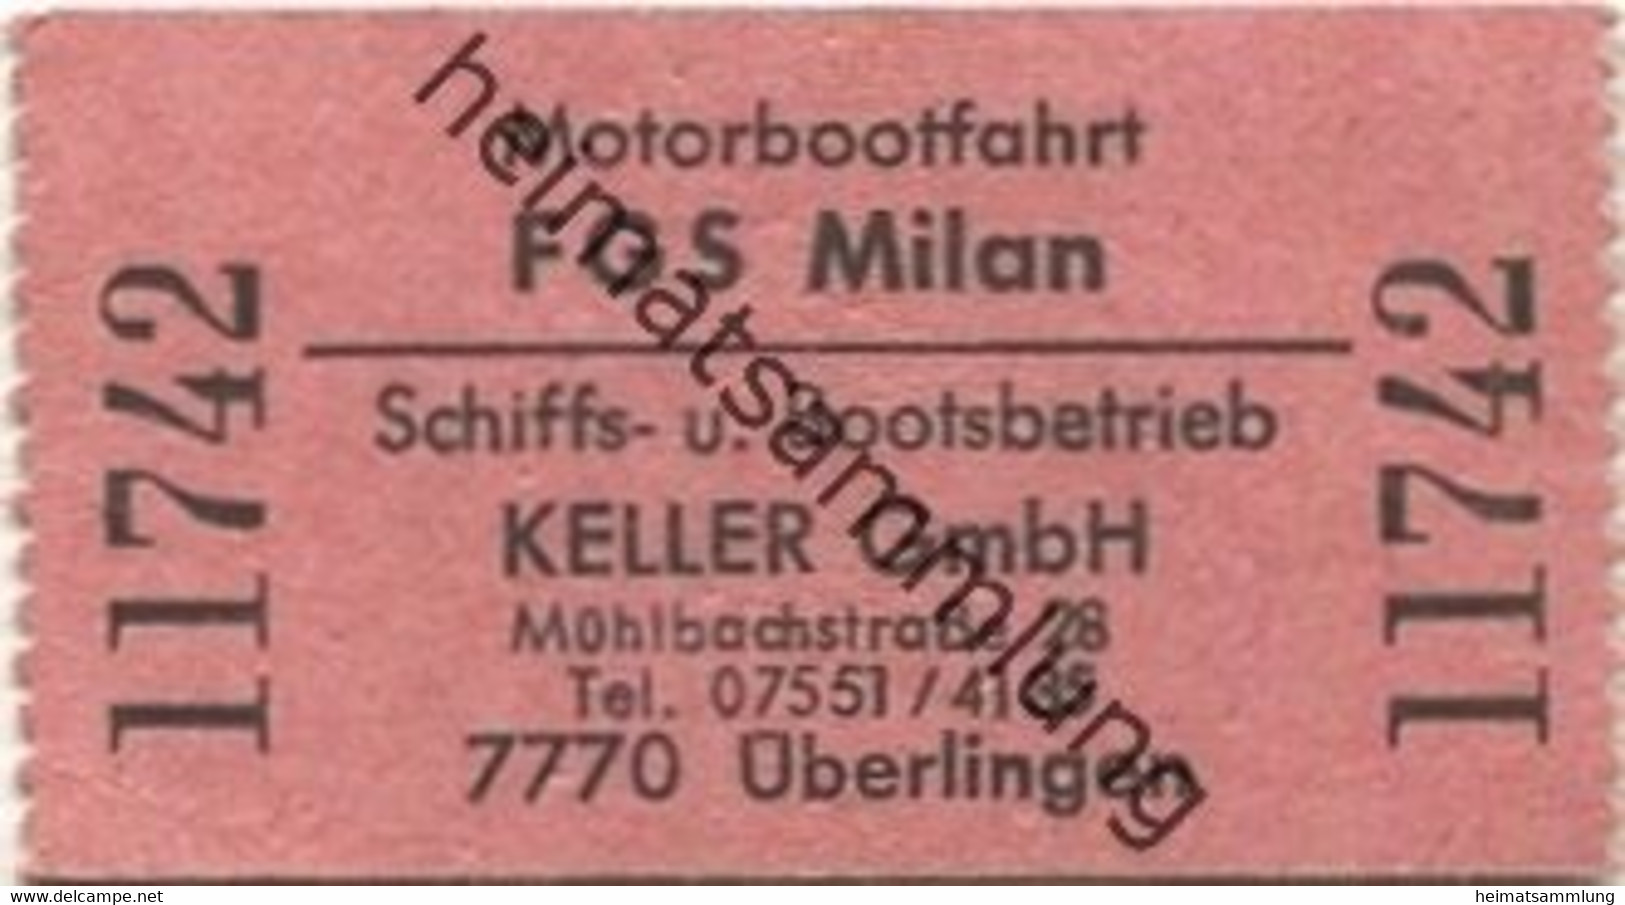 Deutschland - Motorbootfahrt - FGS Milan - Schiffs- Und Bootsbetrieb Keller GmbH Überlingen - Fahrschein - Europa